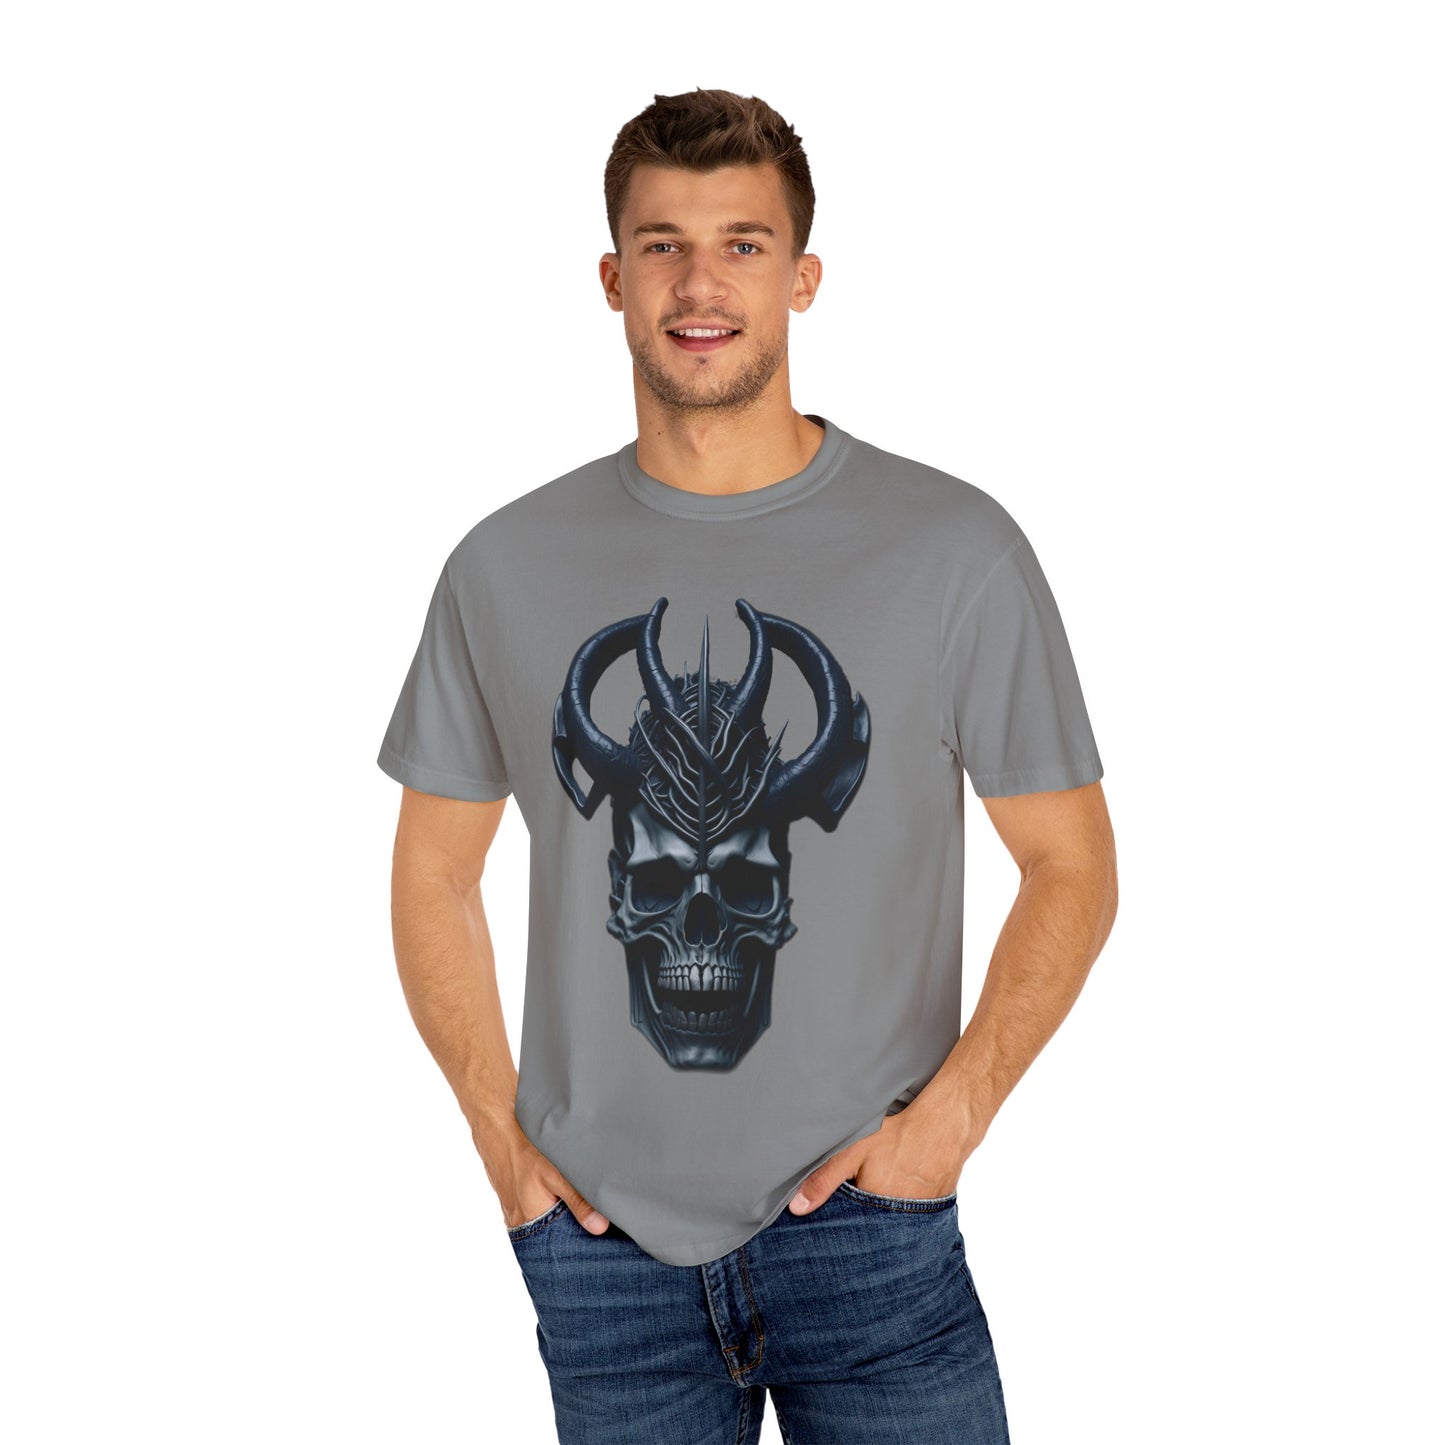 Unisex T-shirt - Skull